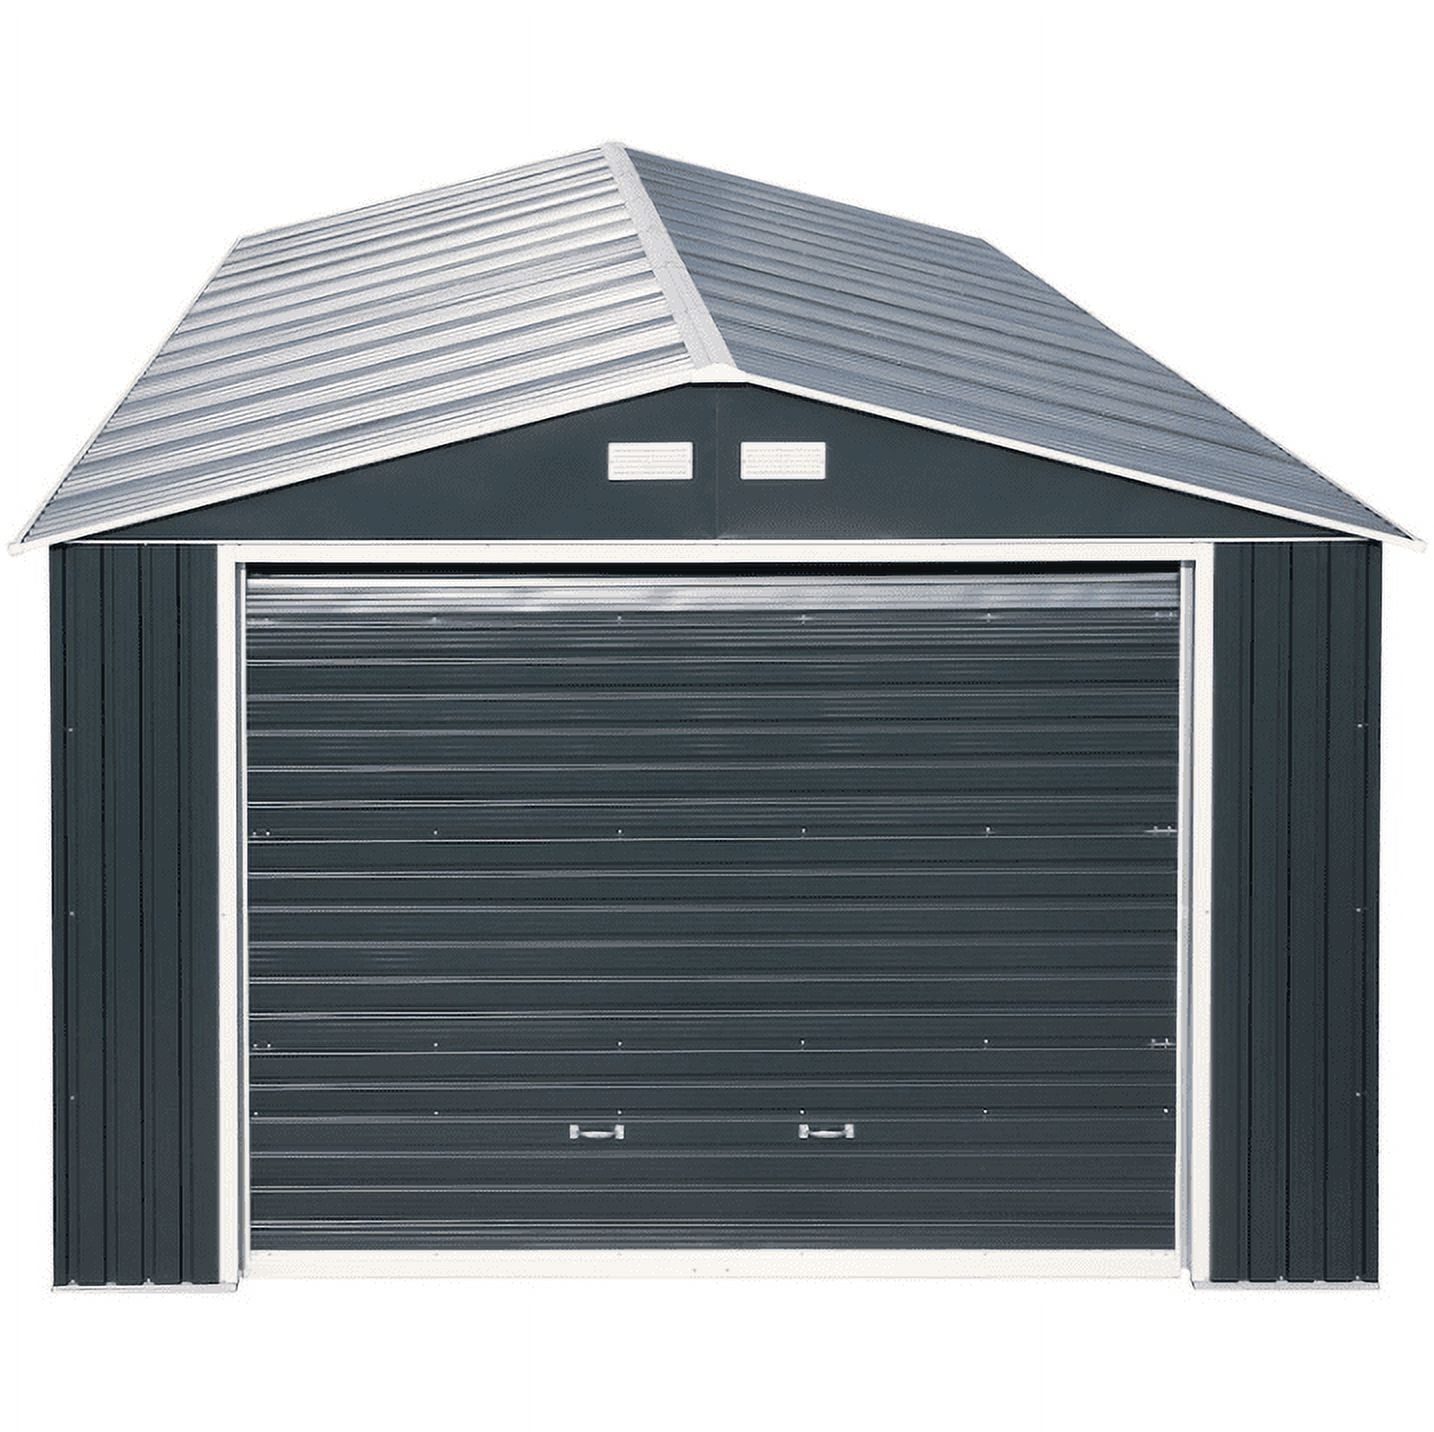 Duramax 55151 Metal Garage 12'x26' Metal Storage Shed Dark Gray with White Trim - image 3 of 5